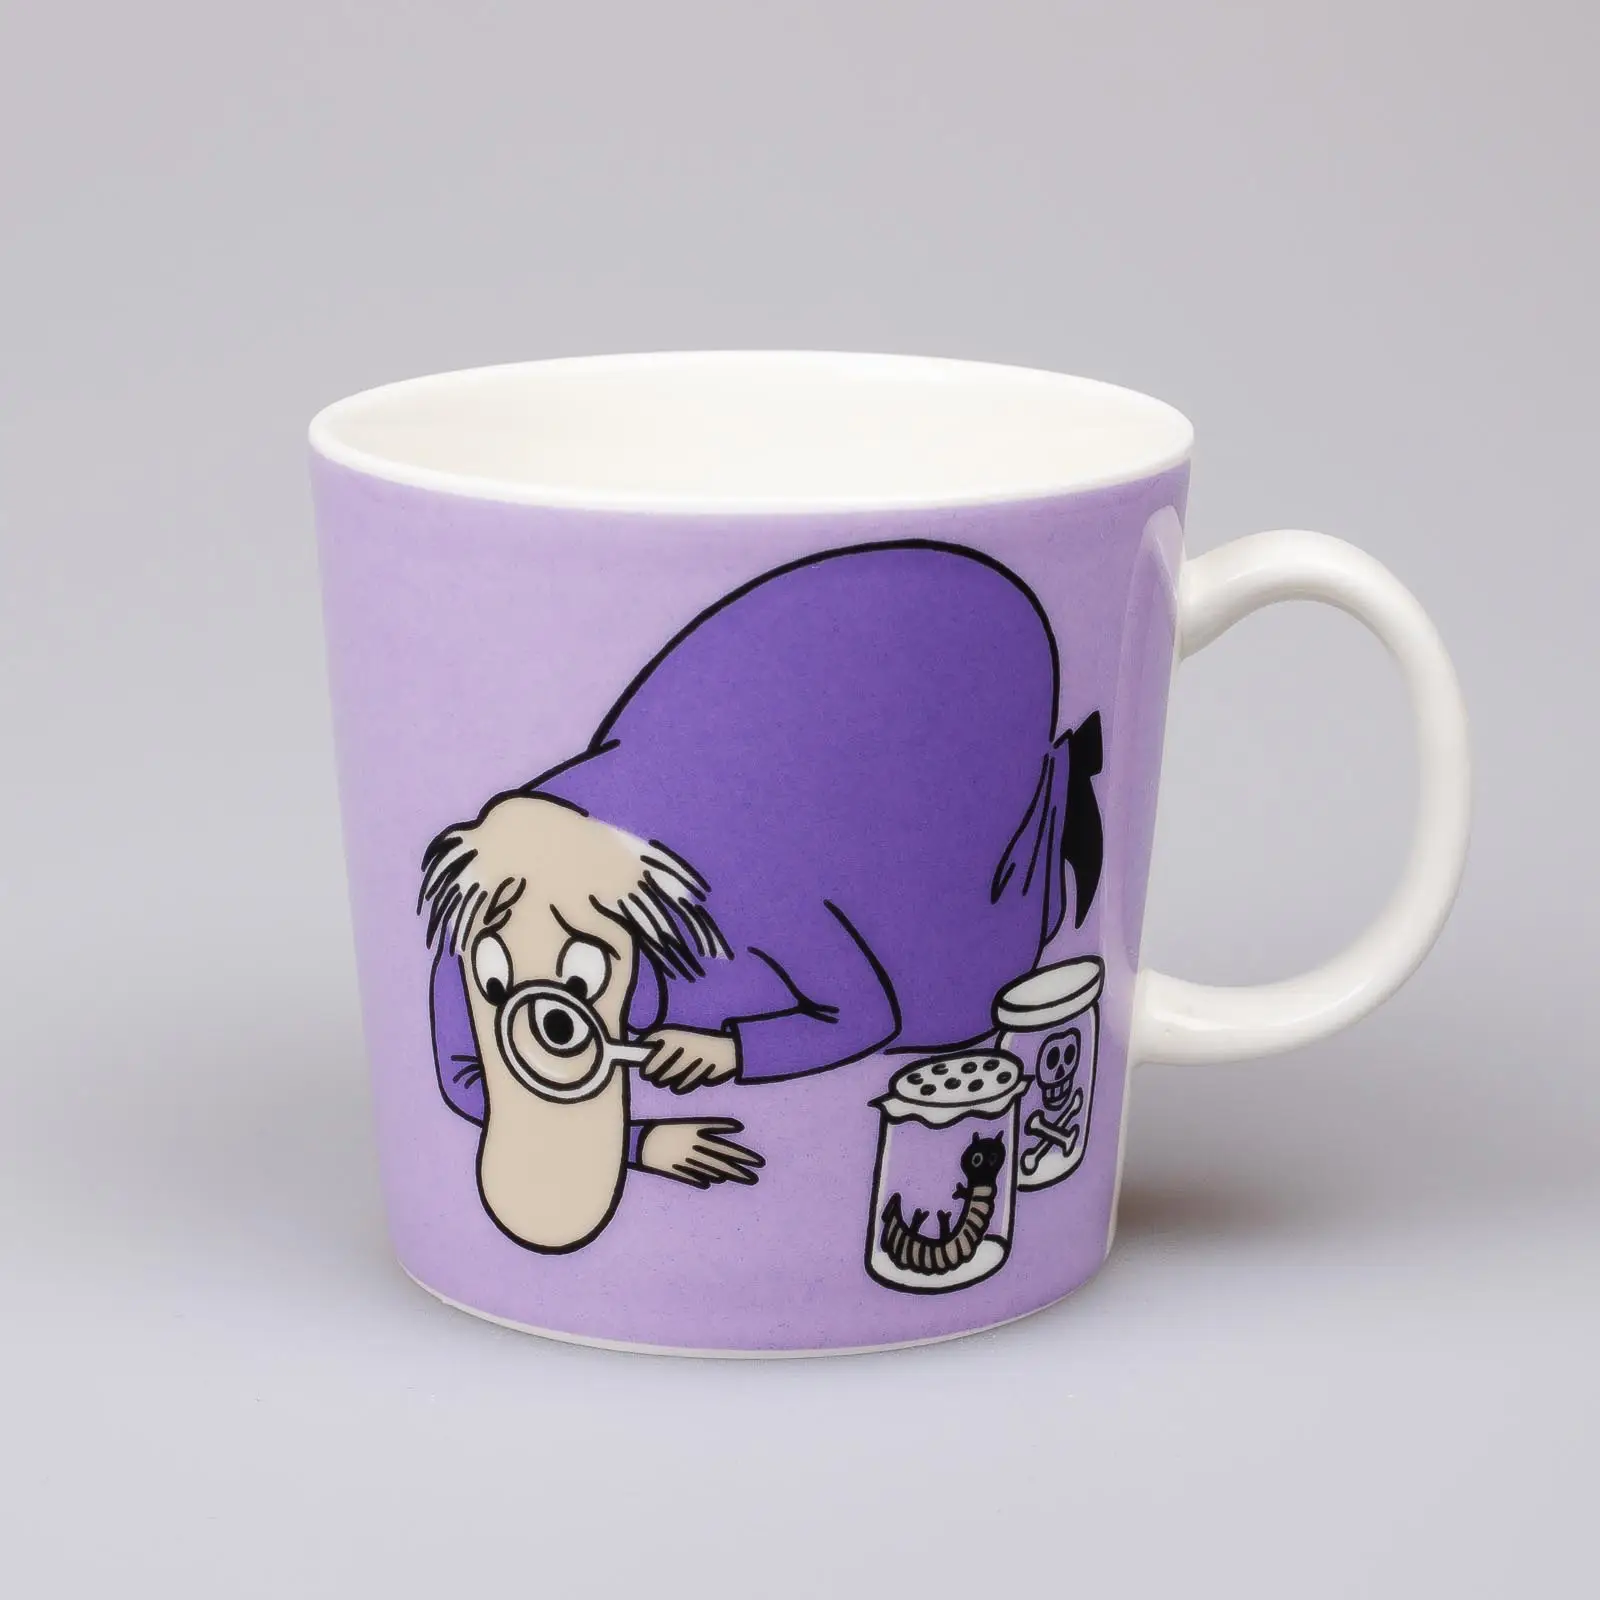 Moomin mug – Hemulen – (2004 – 2013)